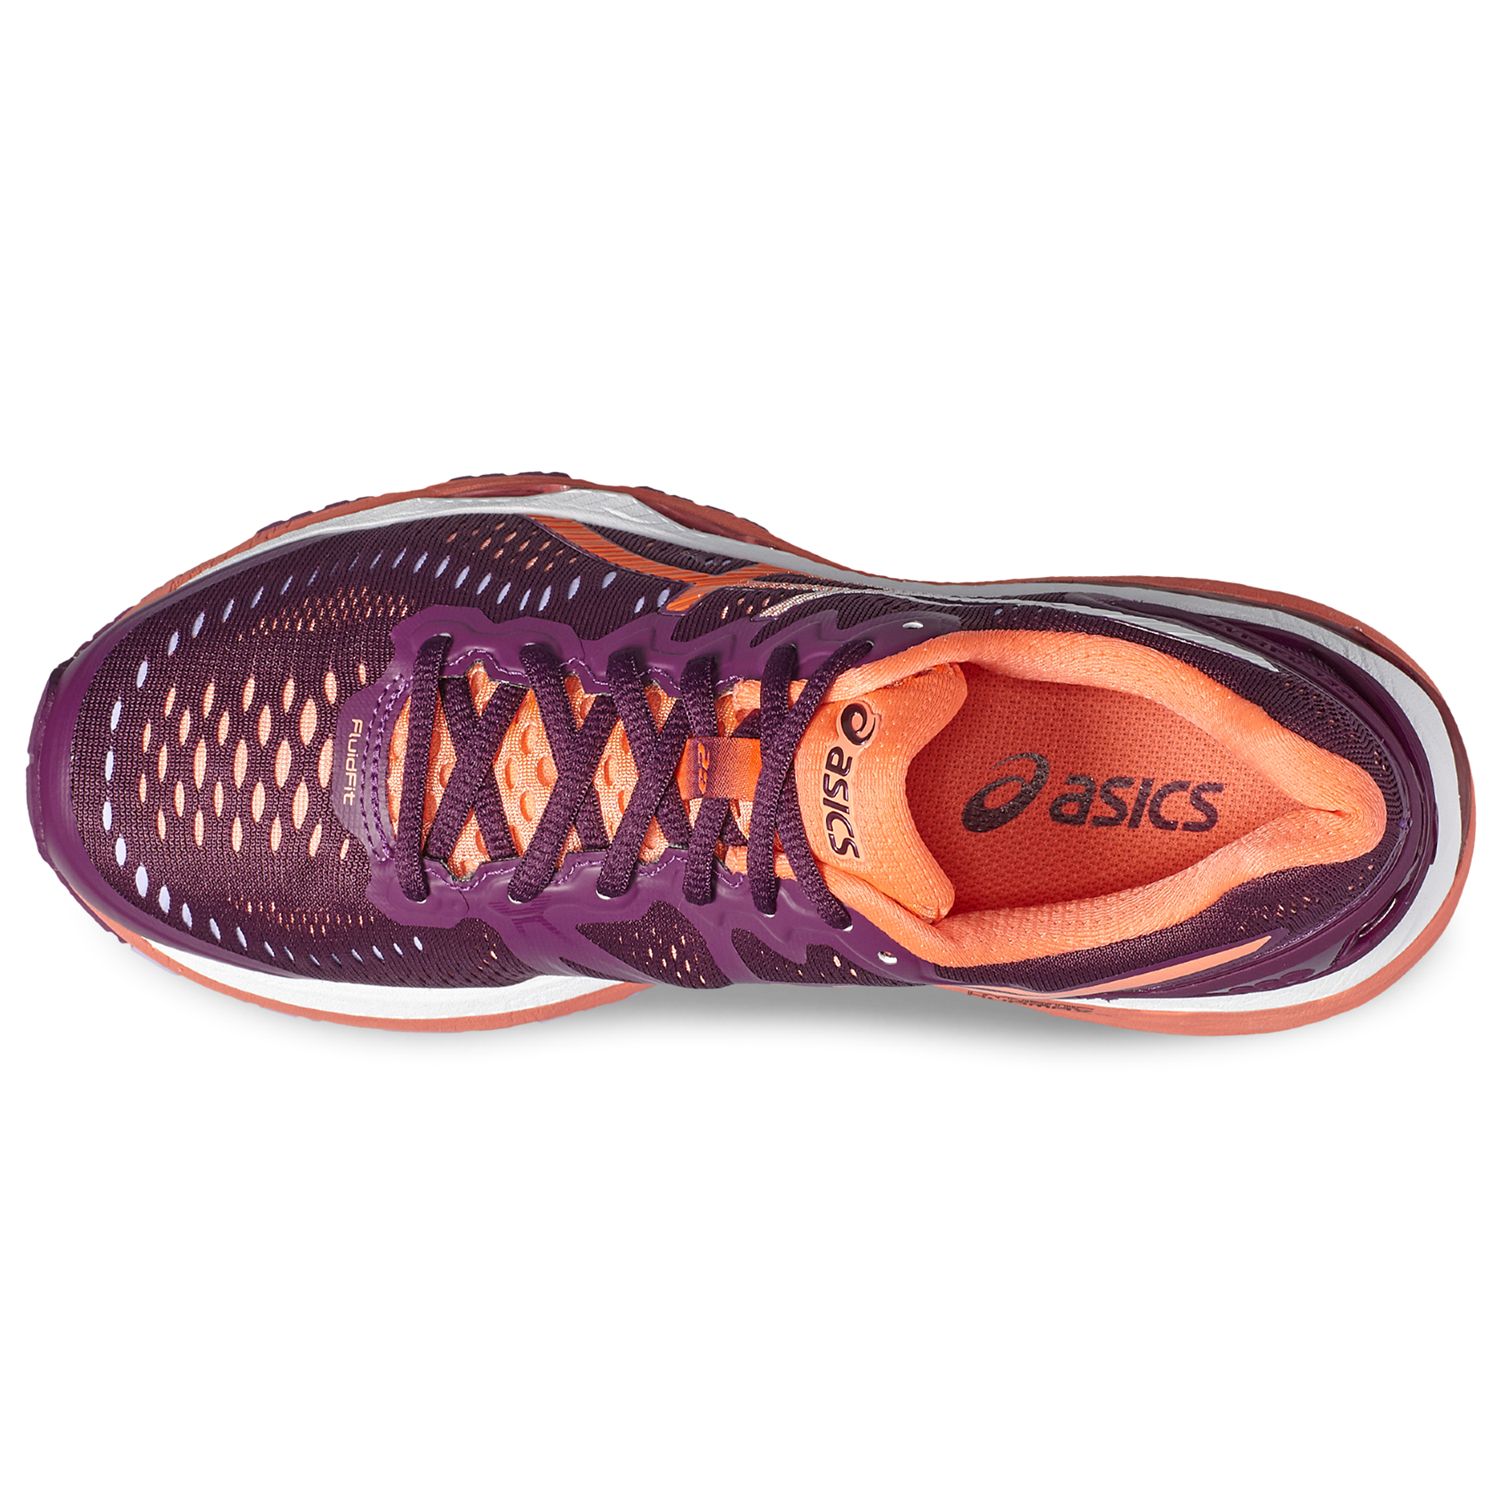 Asics Gel Kayano 23 Women S Running Shoes Purple Coral At John Lewis Partners